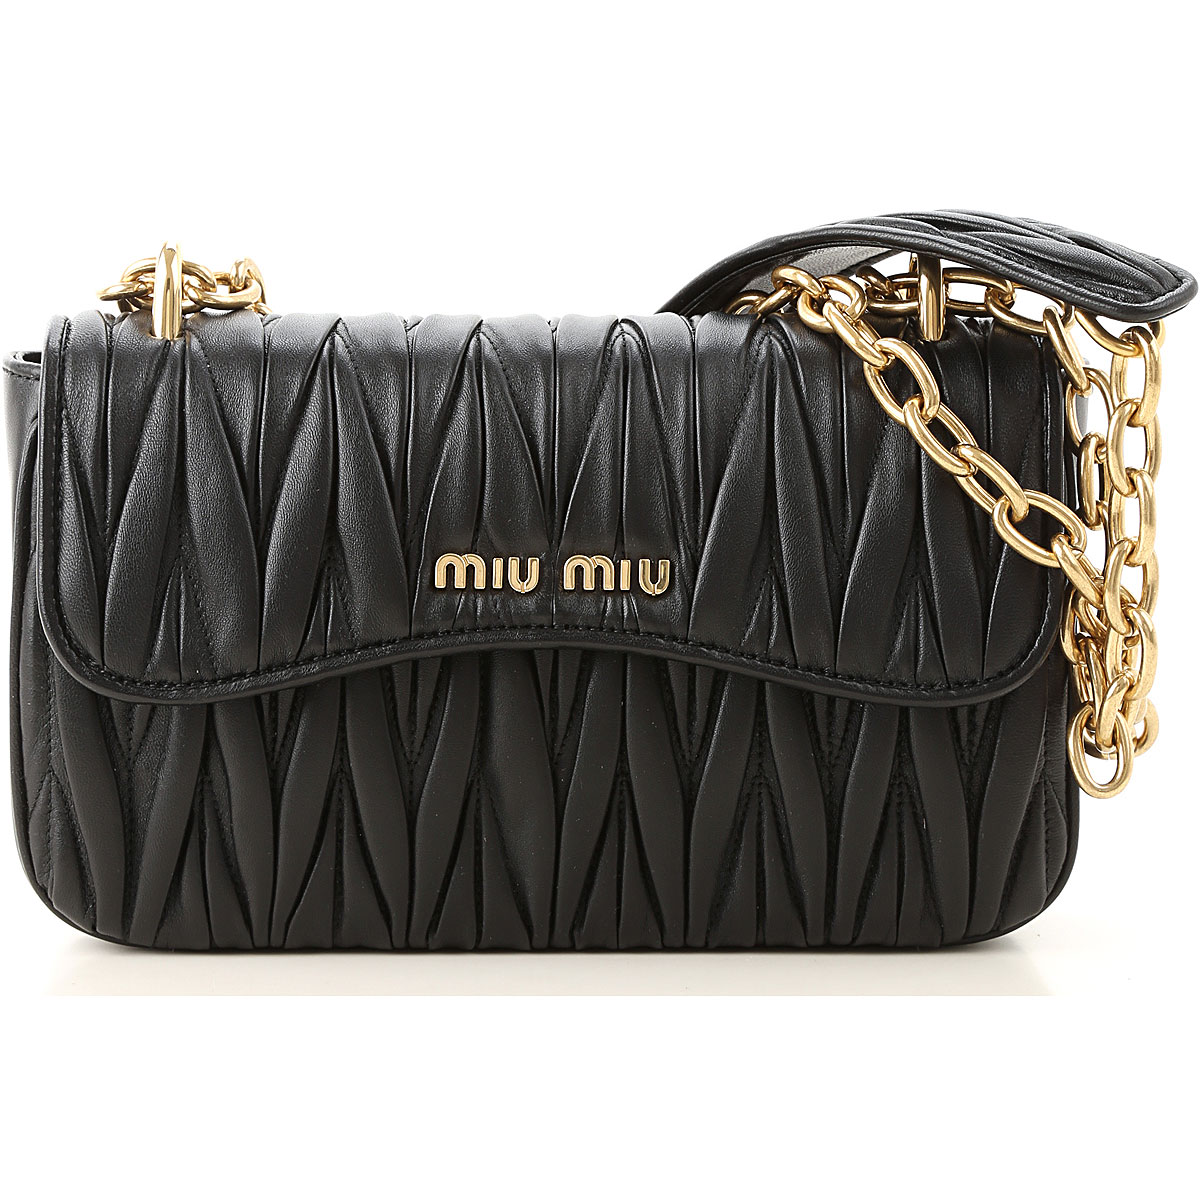 Handbags Miu Miu, Style code: 5bd140-n88-f0002